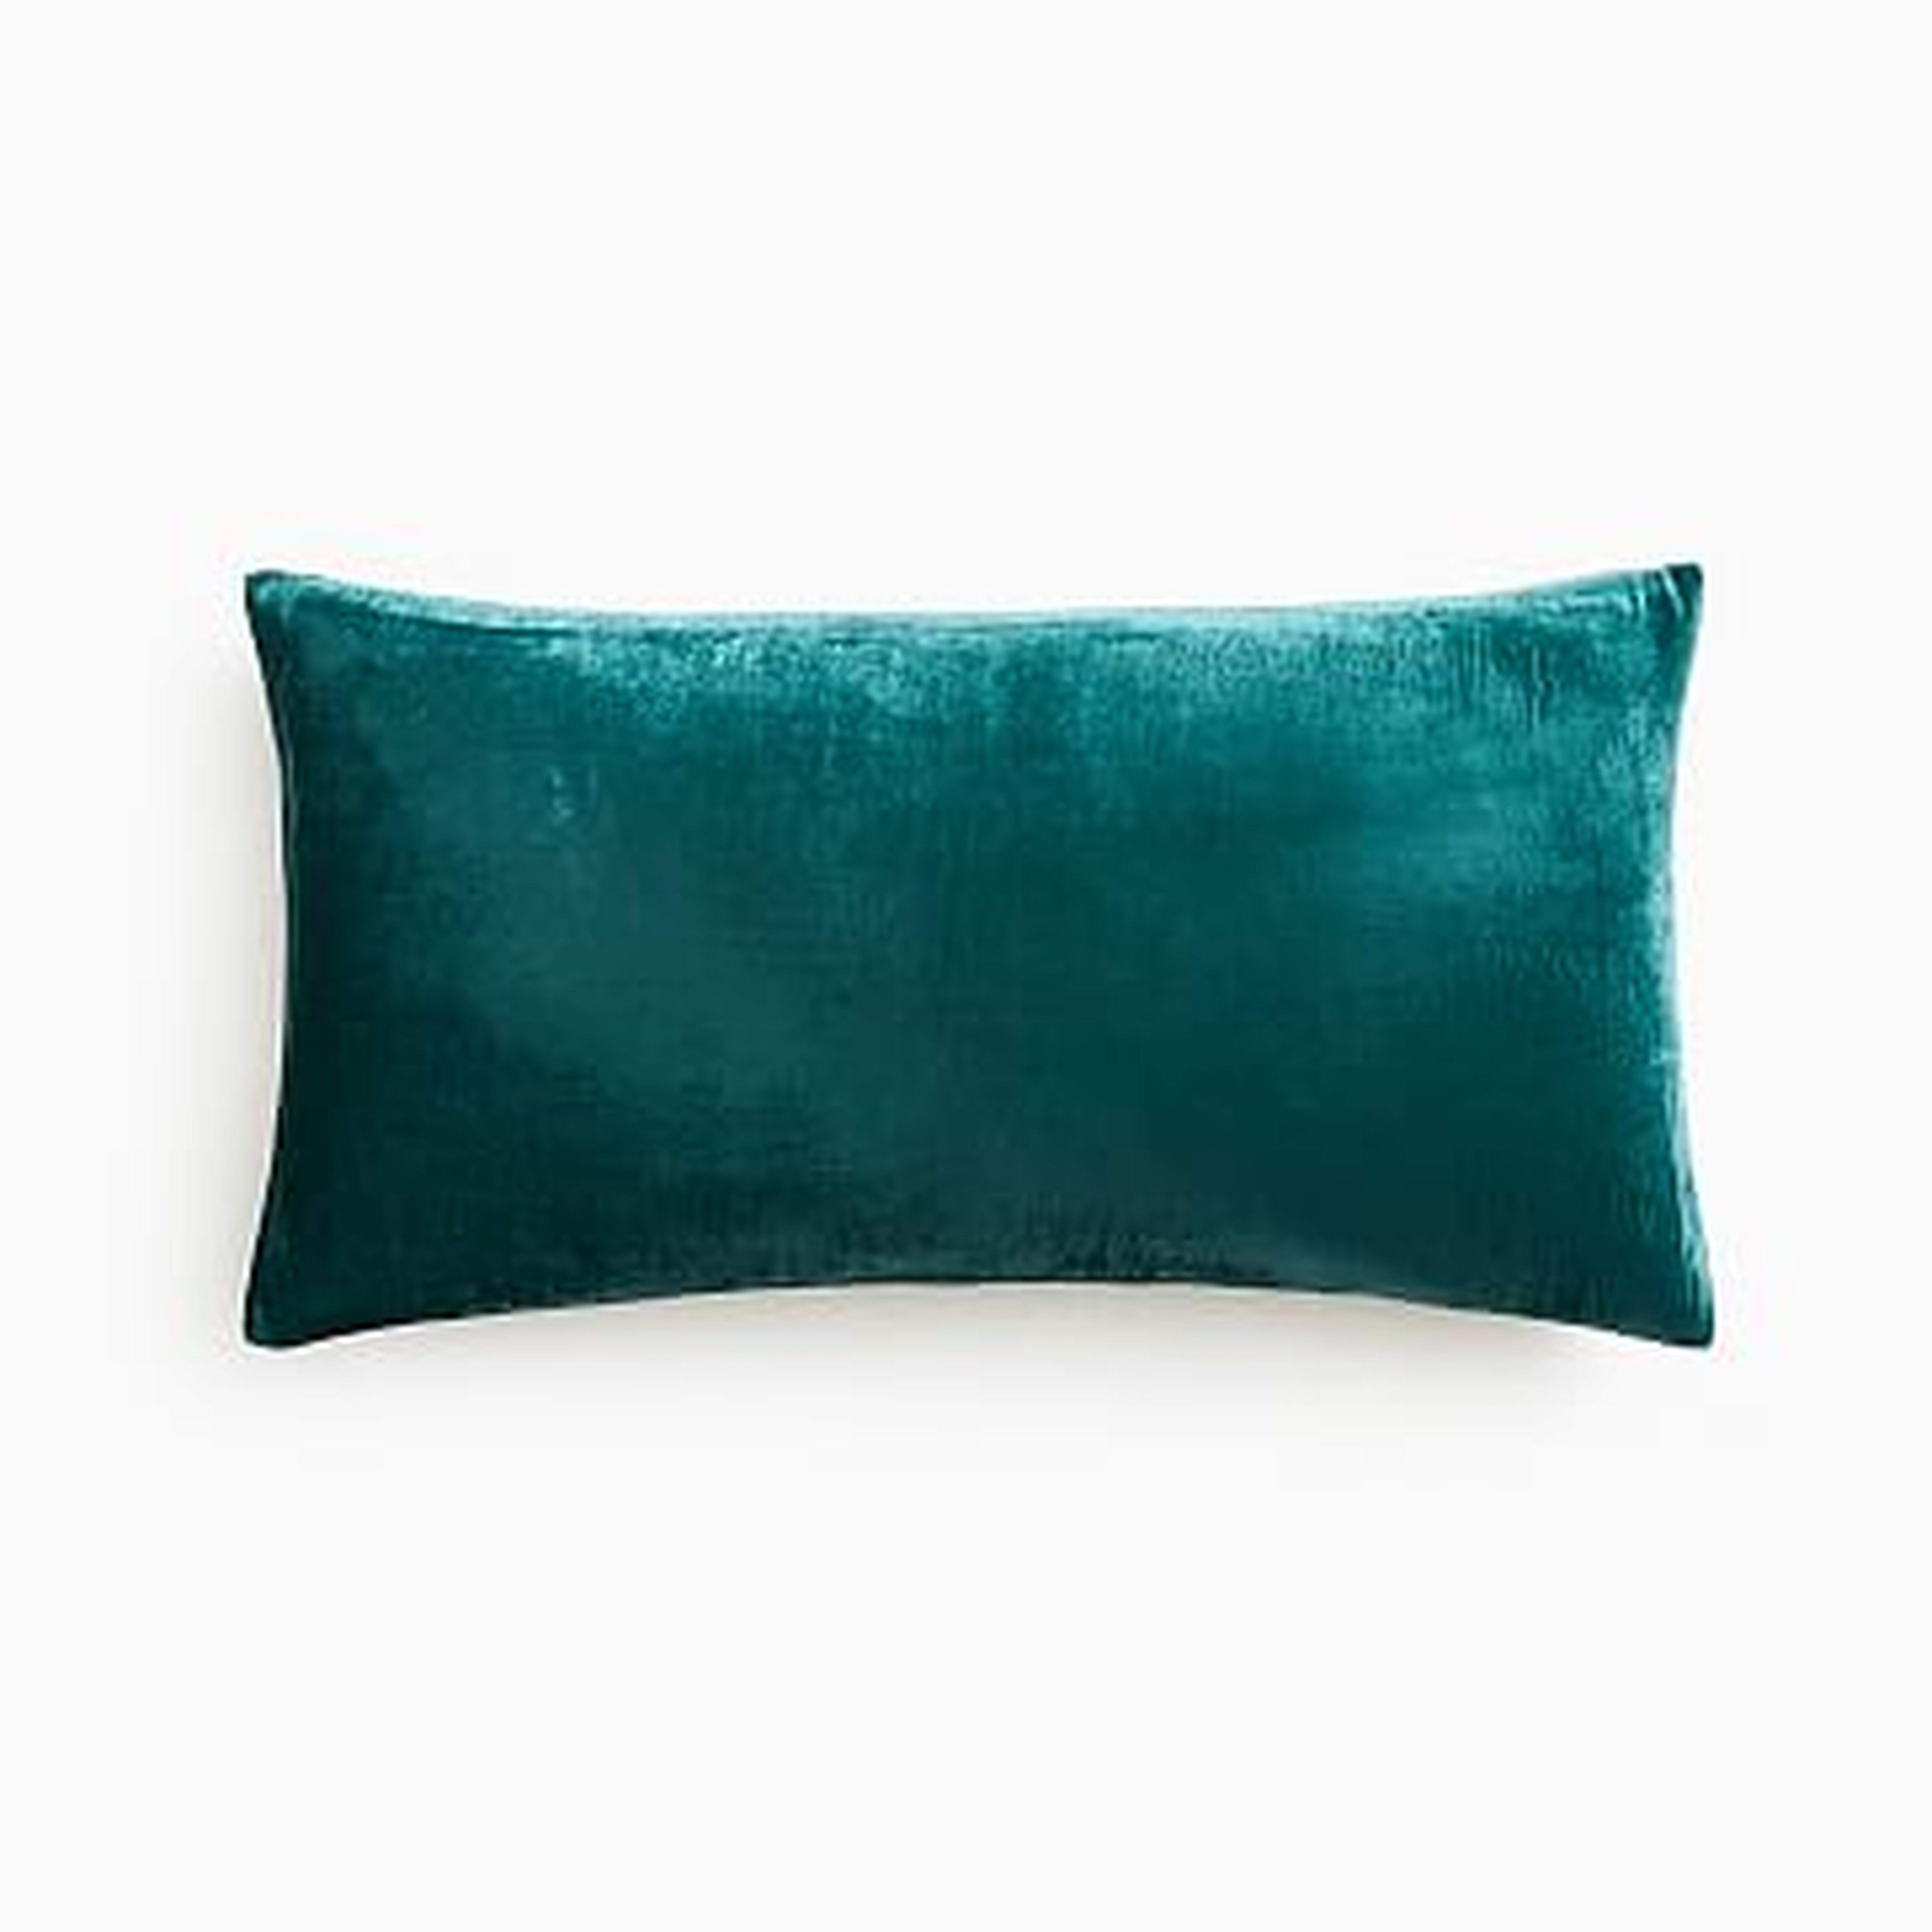 Lush Velvet Pillow Cover, 14"x26", Botanical Garden - West Elm